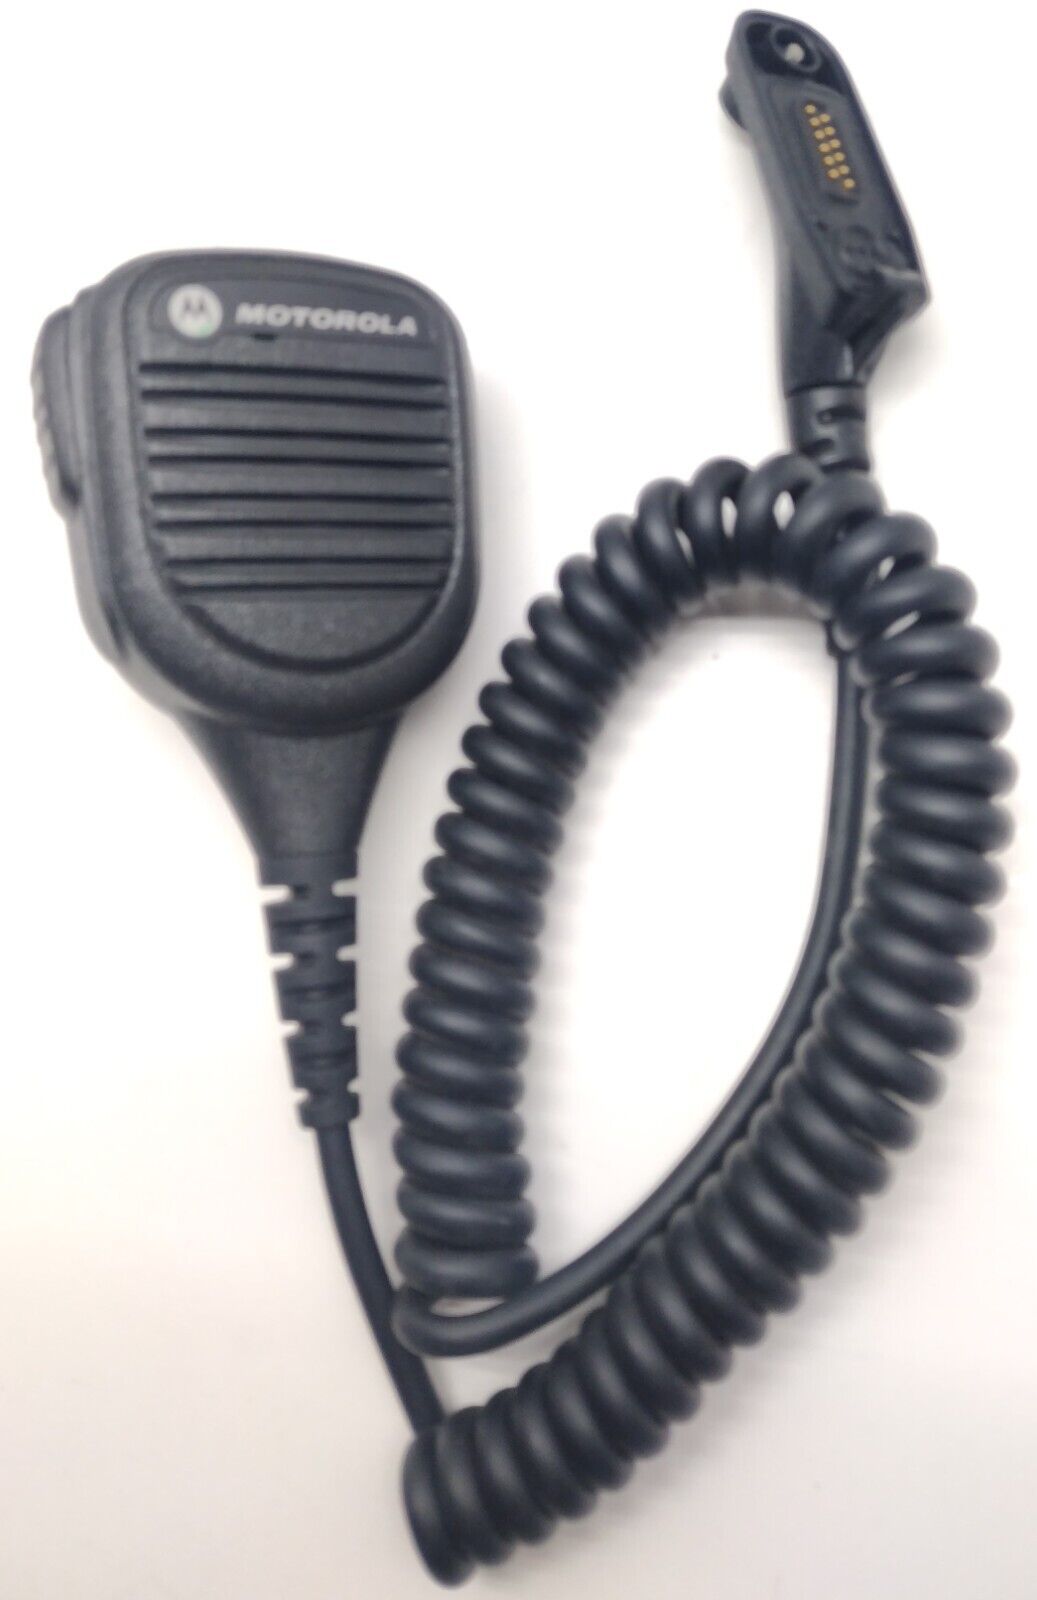 Motorola APX 6000 15 UHF 380470 MHz Two Way Radio AES 256  GPS BT H98QDD9PW5BN